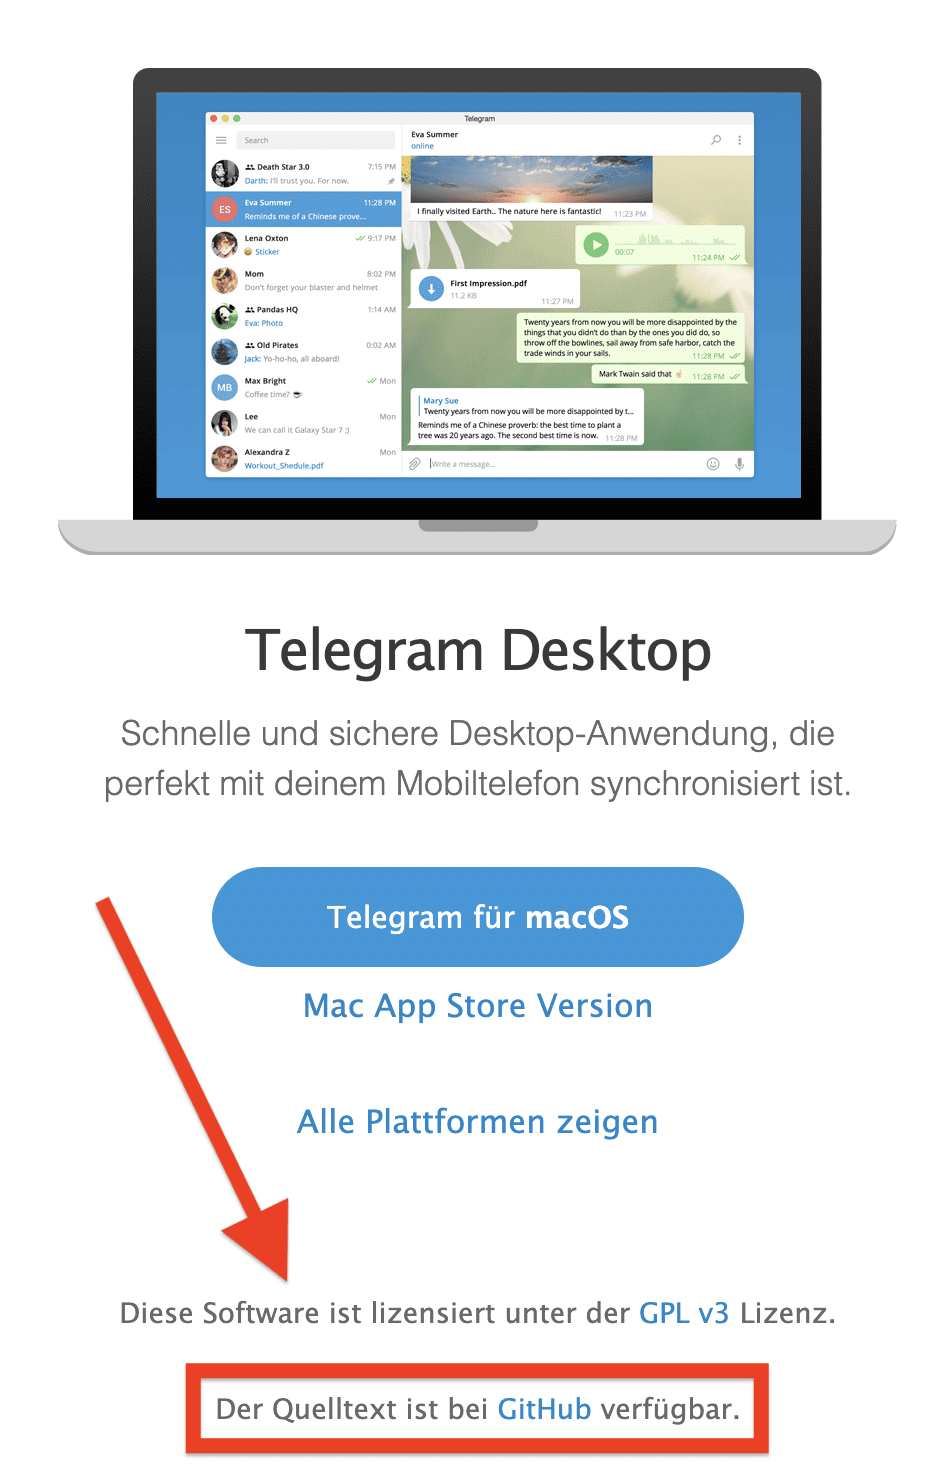 telegram open source